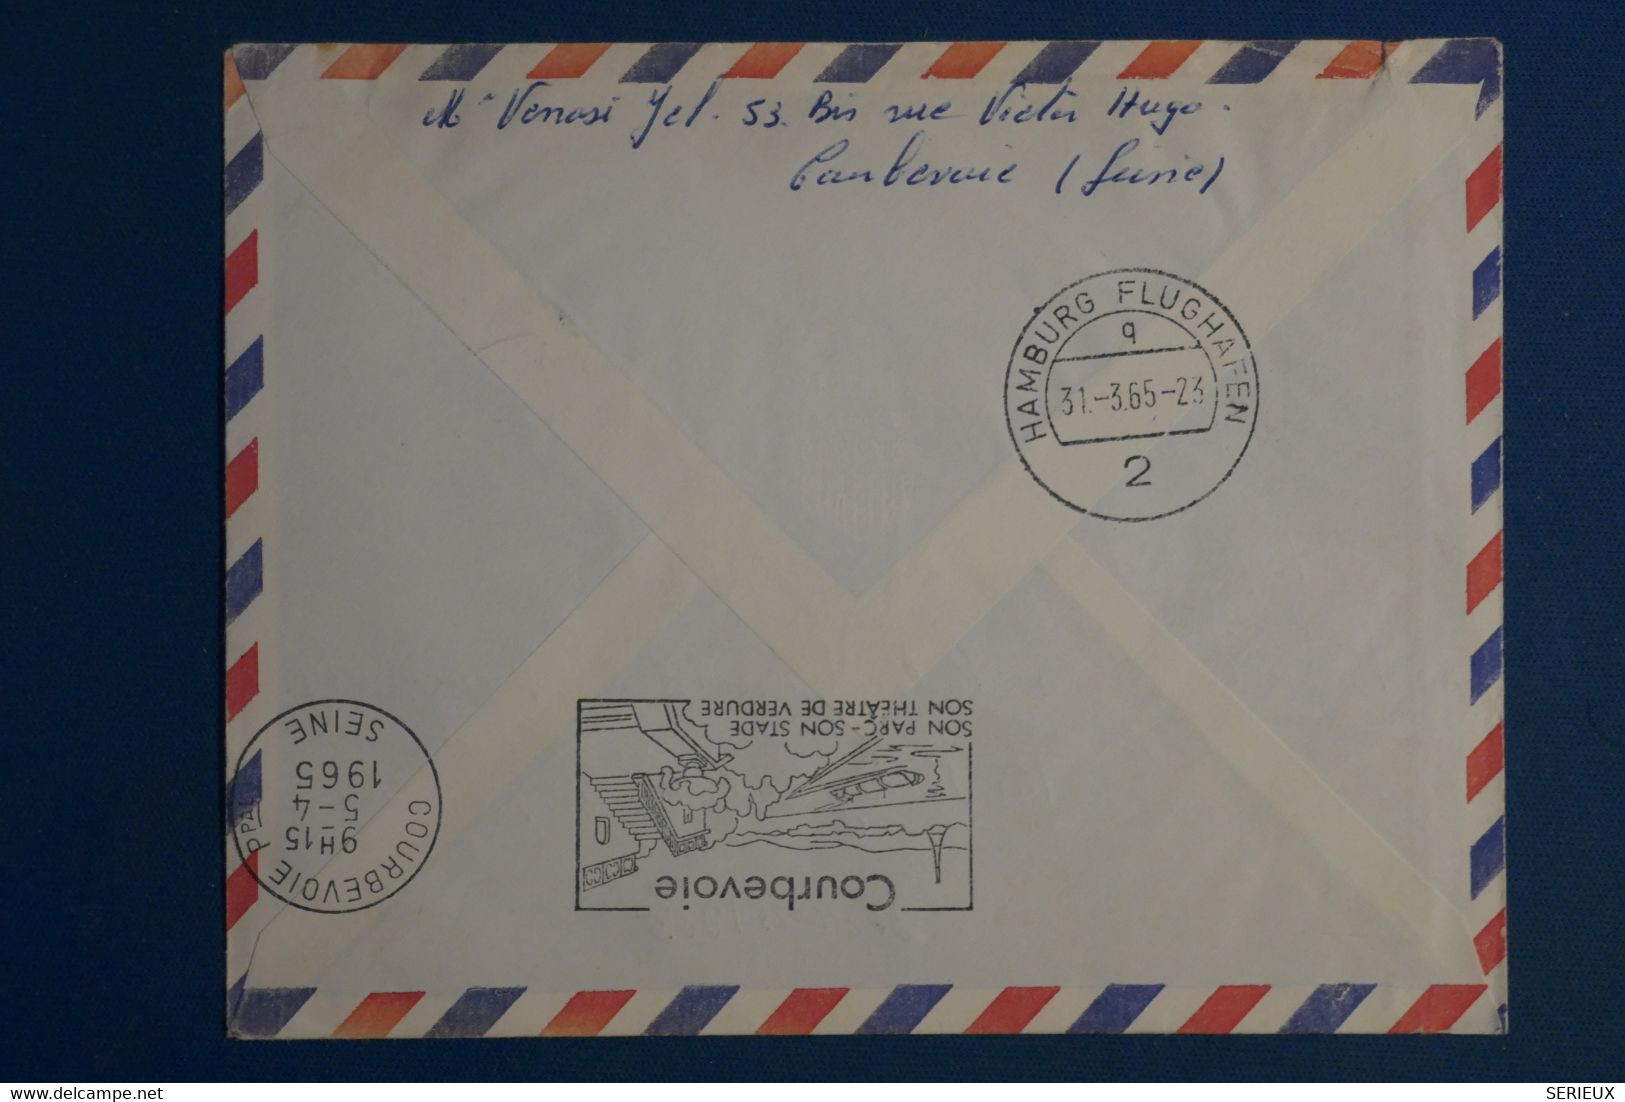 A0 8 FRANCE  BELLE LETTRE   1965  +++PREMIER VOL BOEING  LUFTHANSA PARIS HAMBOURG  +AFFRANCH.  PLAISANT   + - Briefe U. Dokumente